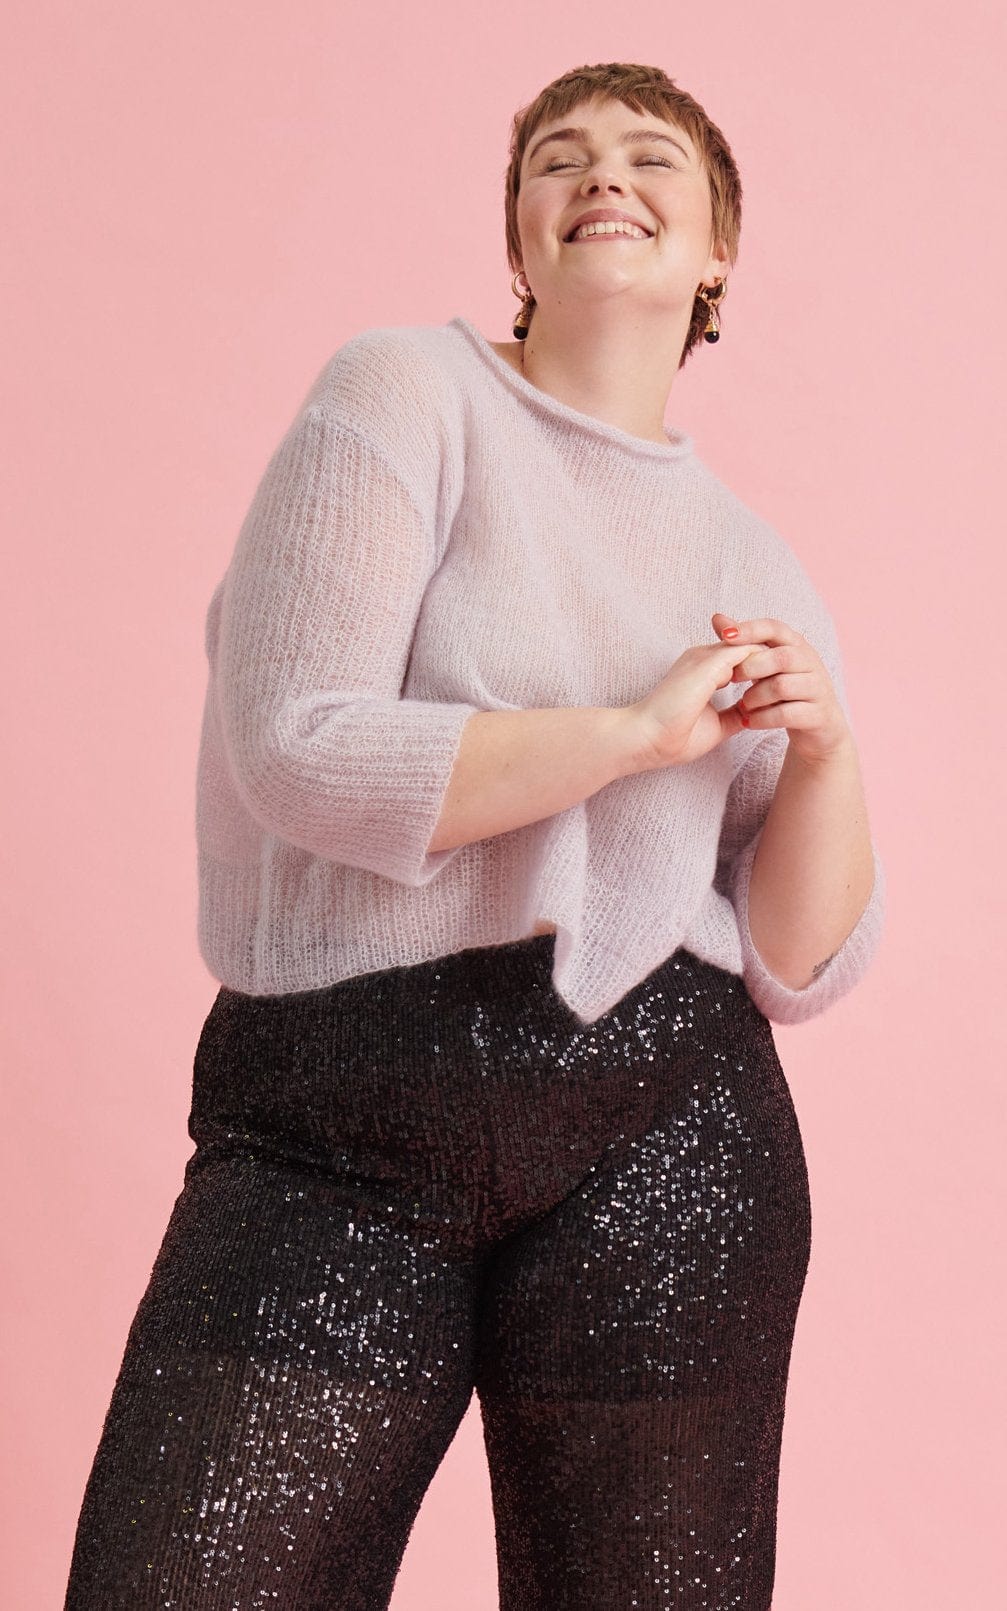 Pullover im Halbpatent - Plus Size - SILKHAIR - Strickset von LANA GROSSA jetzt online kaufen bei OONIQUE